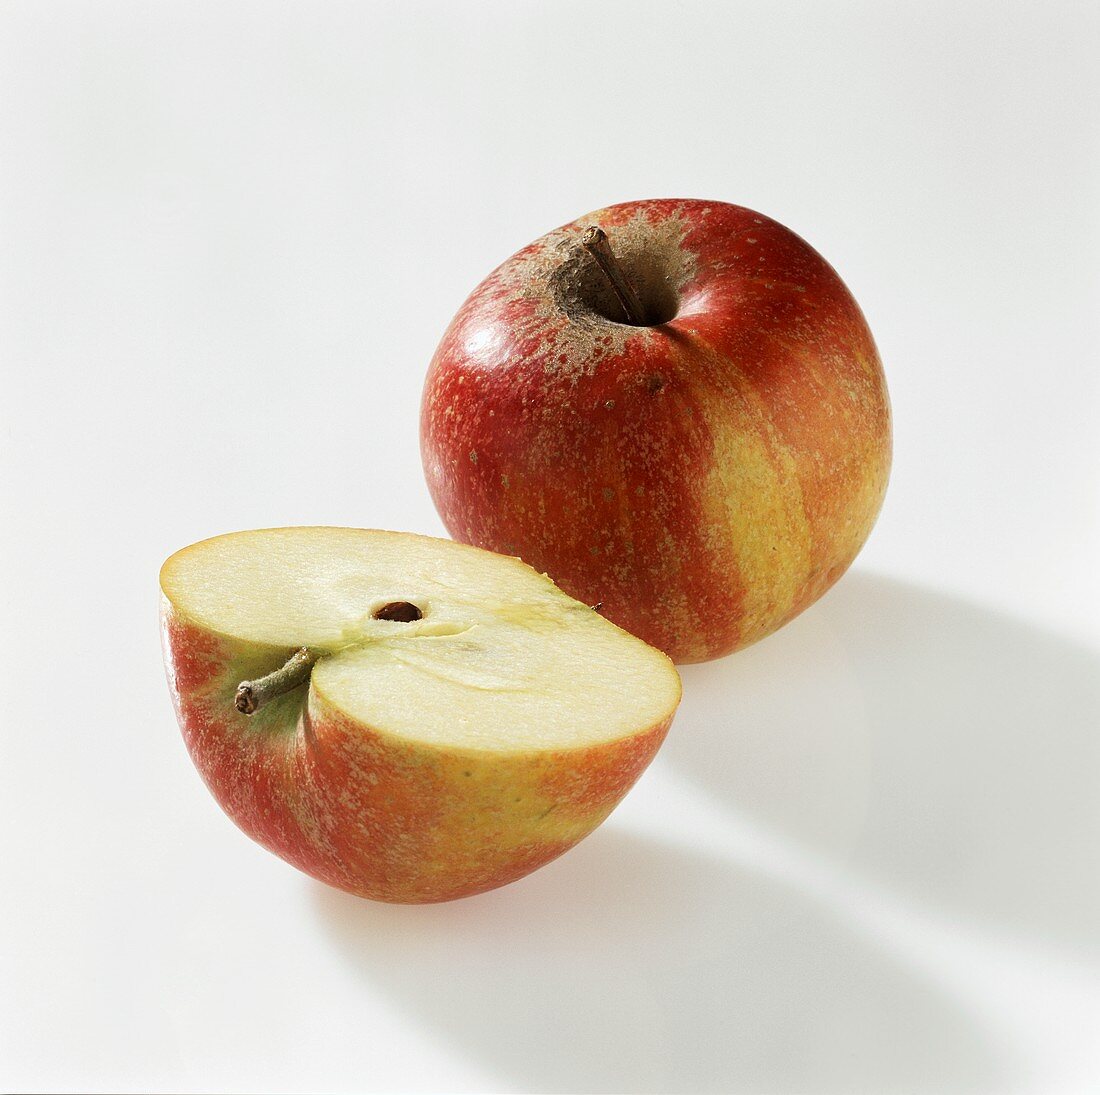 Whole and half apple (Cox's Orange Pippin)